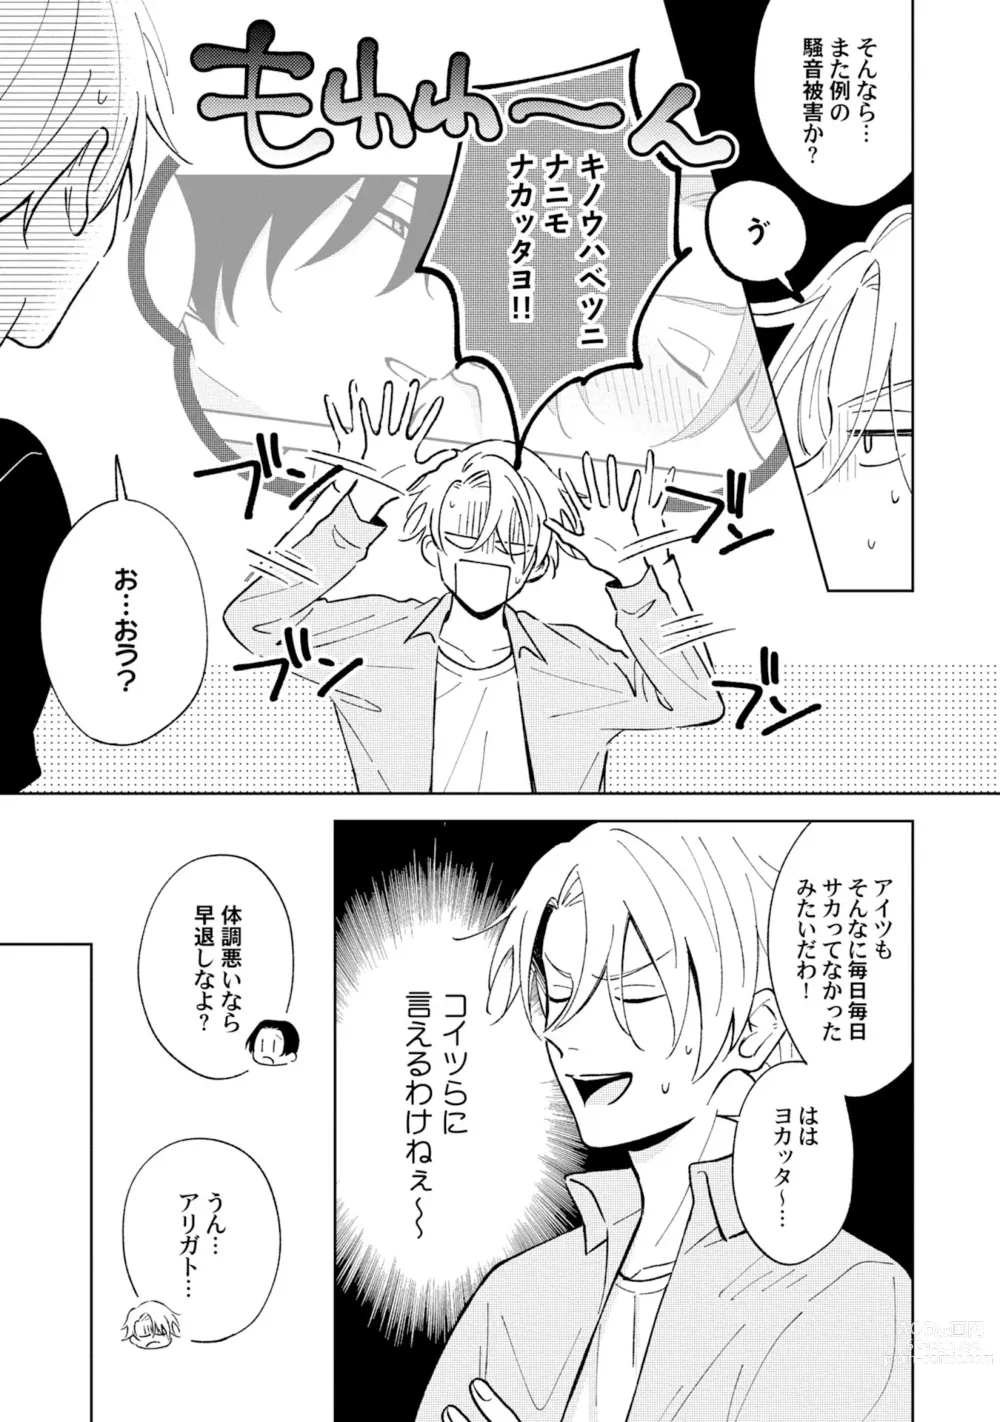 Page 7 of manga Toho 3-byou no Trouble Love Room 2